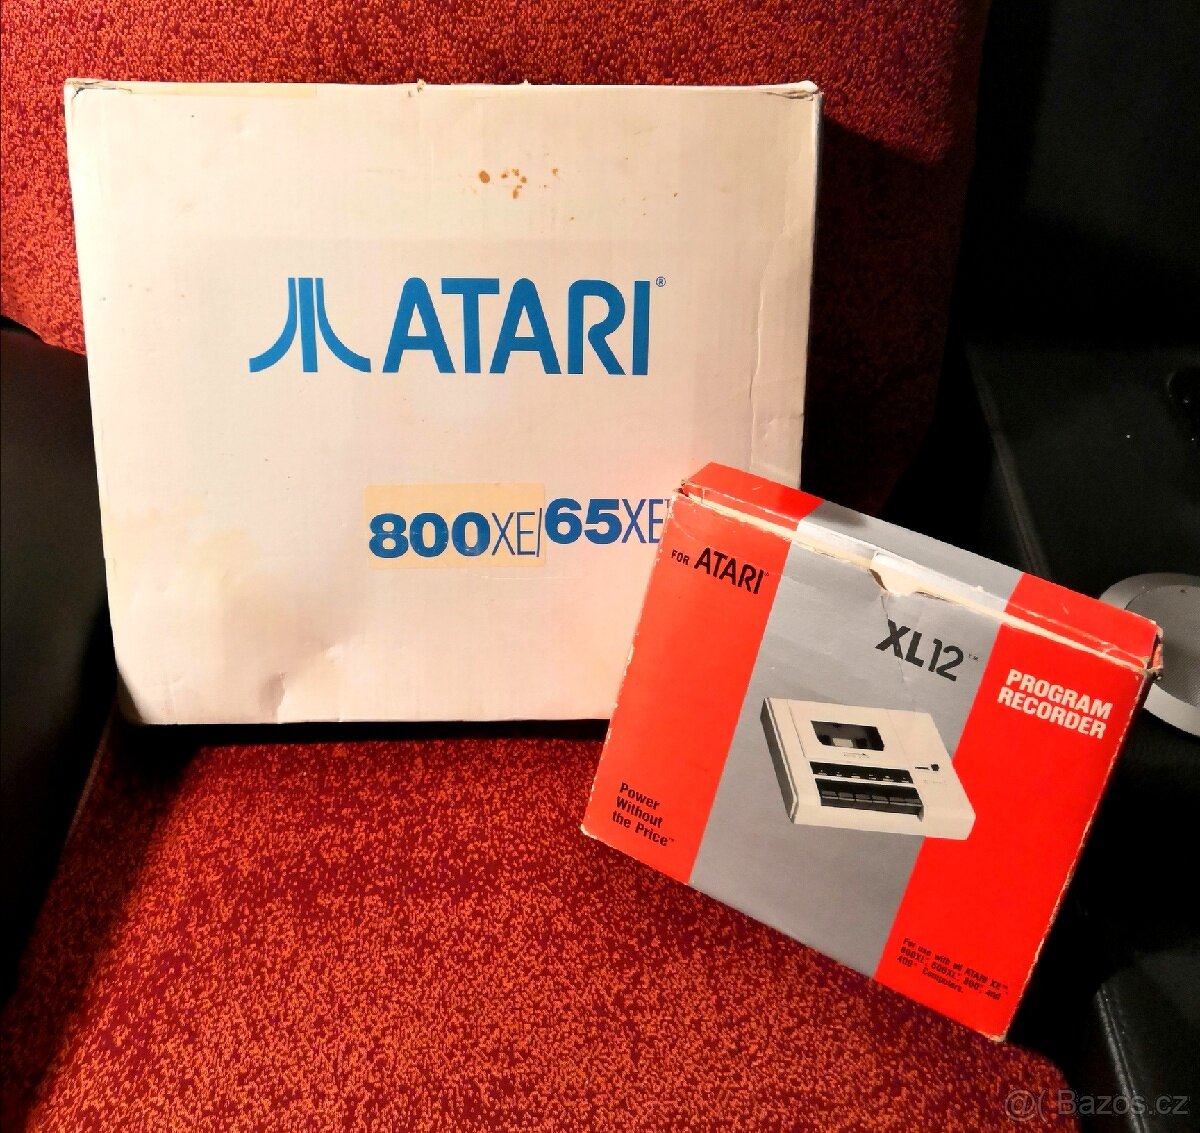 Atari 800 XE / 65 XE, XL12